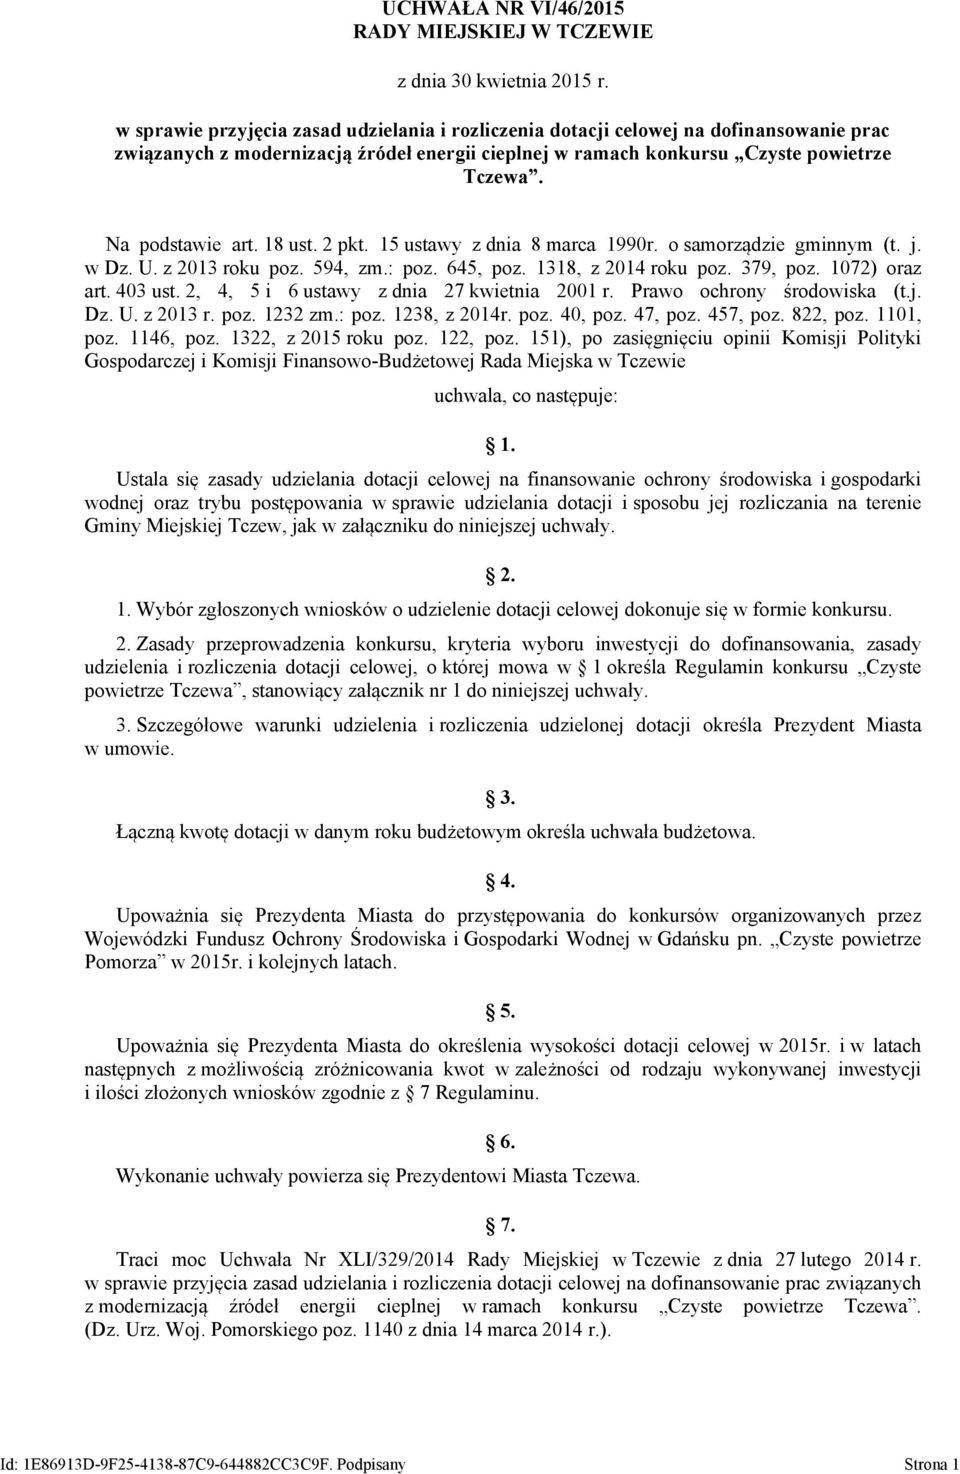 18 ust. 2 pkt. 15 ustawy z dnia 8 marca 1990r. o samorządzie gminnym (t. j. w Dz. U. z 2013 roku poz. 594, zm.: poz. 645, poz. 1318, z 2014 roku poz. 379, poz. 1072) oraz art. 403 ust.